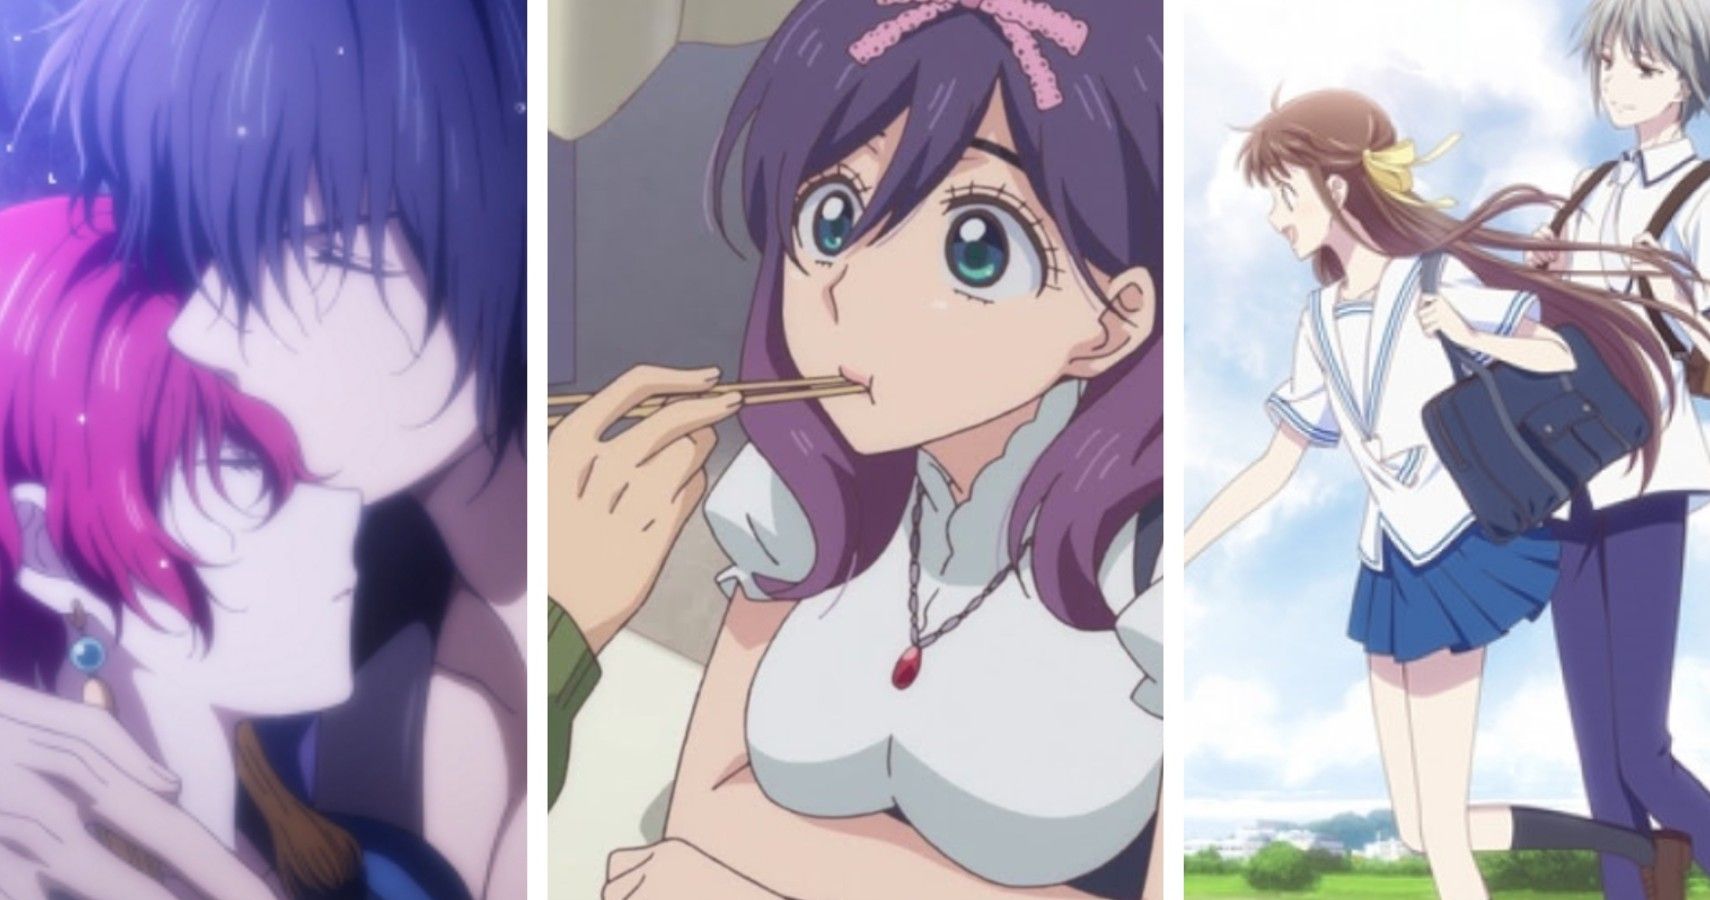 10 Things About Shoujo Anime That Don't Make Sense